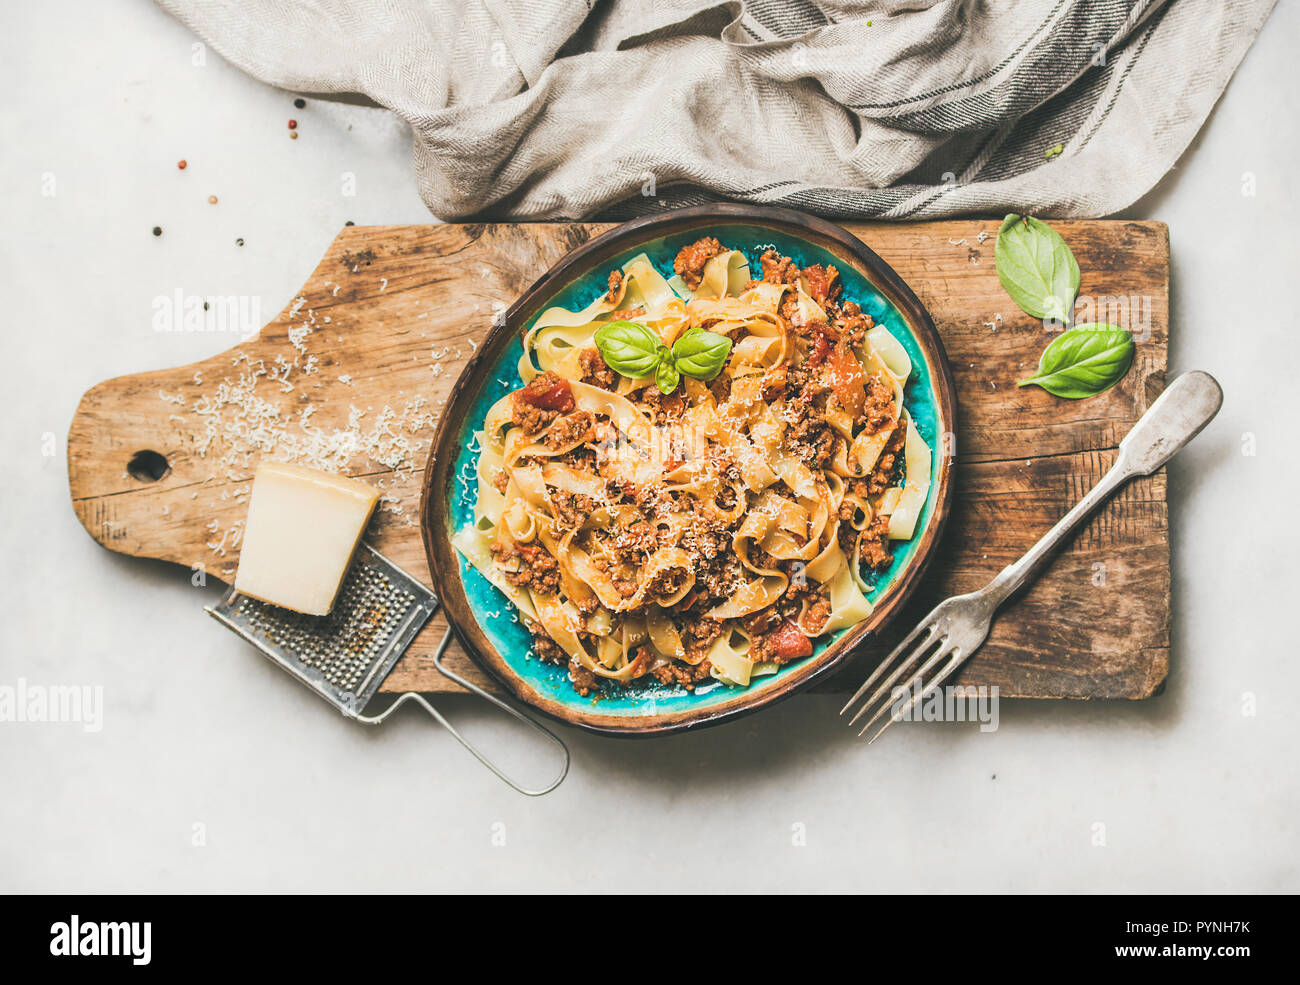 Italian pasta tradizionale cena con Tagliatelle alla bolognese, composizione orizzontale Foto Stock